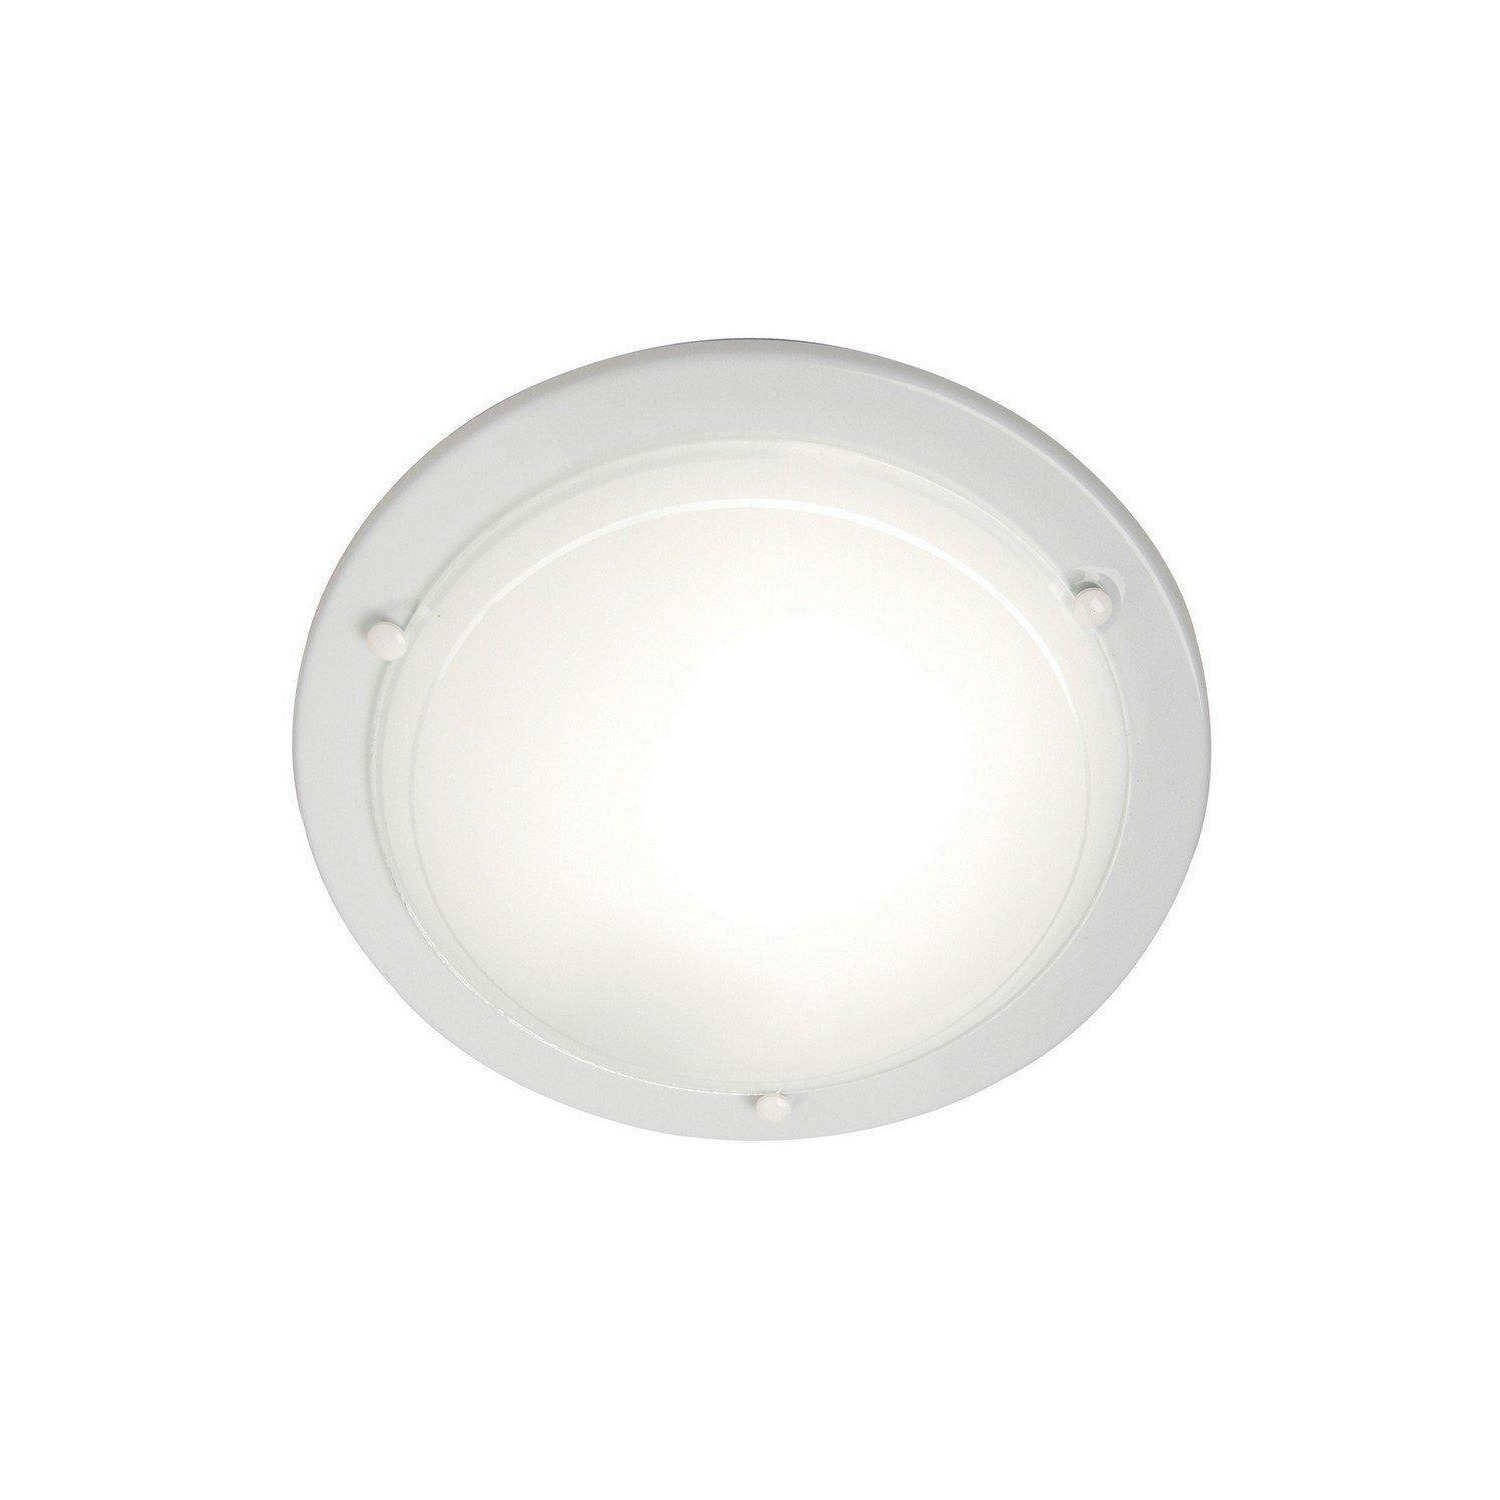 Spinner Flush Ceiling Light White E27 - image 1